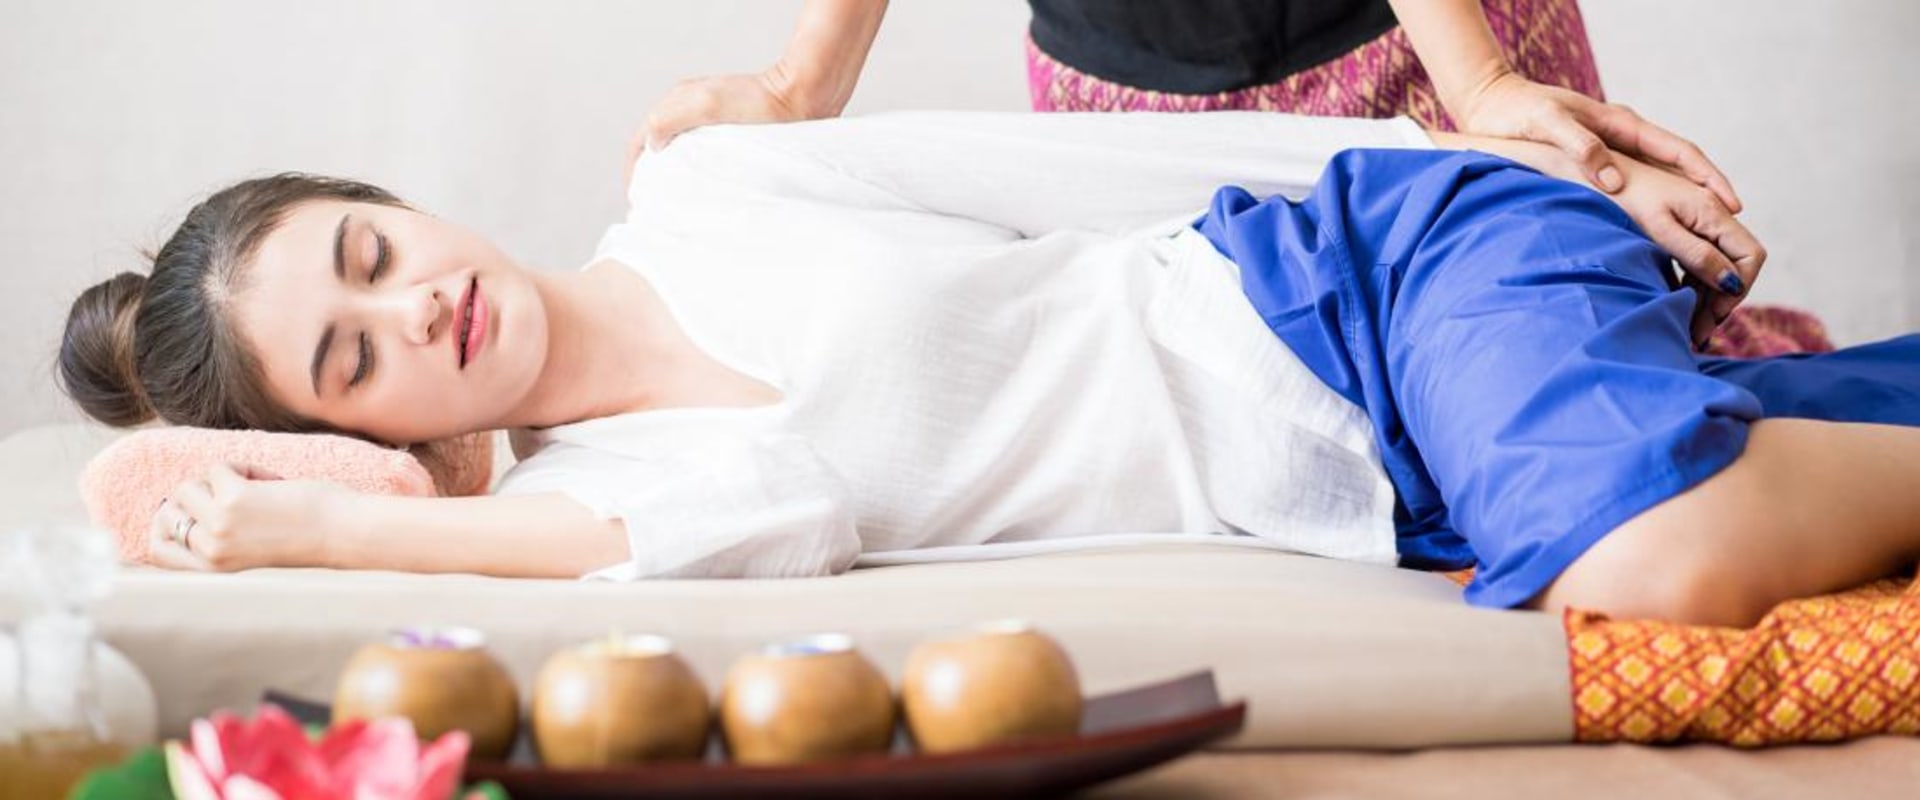 Was sind die Wirkungen der Thai-Massage?